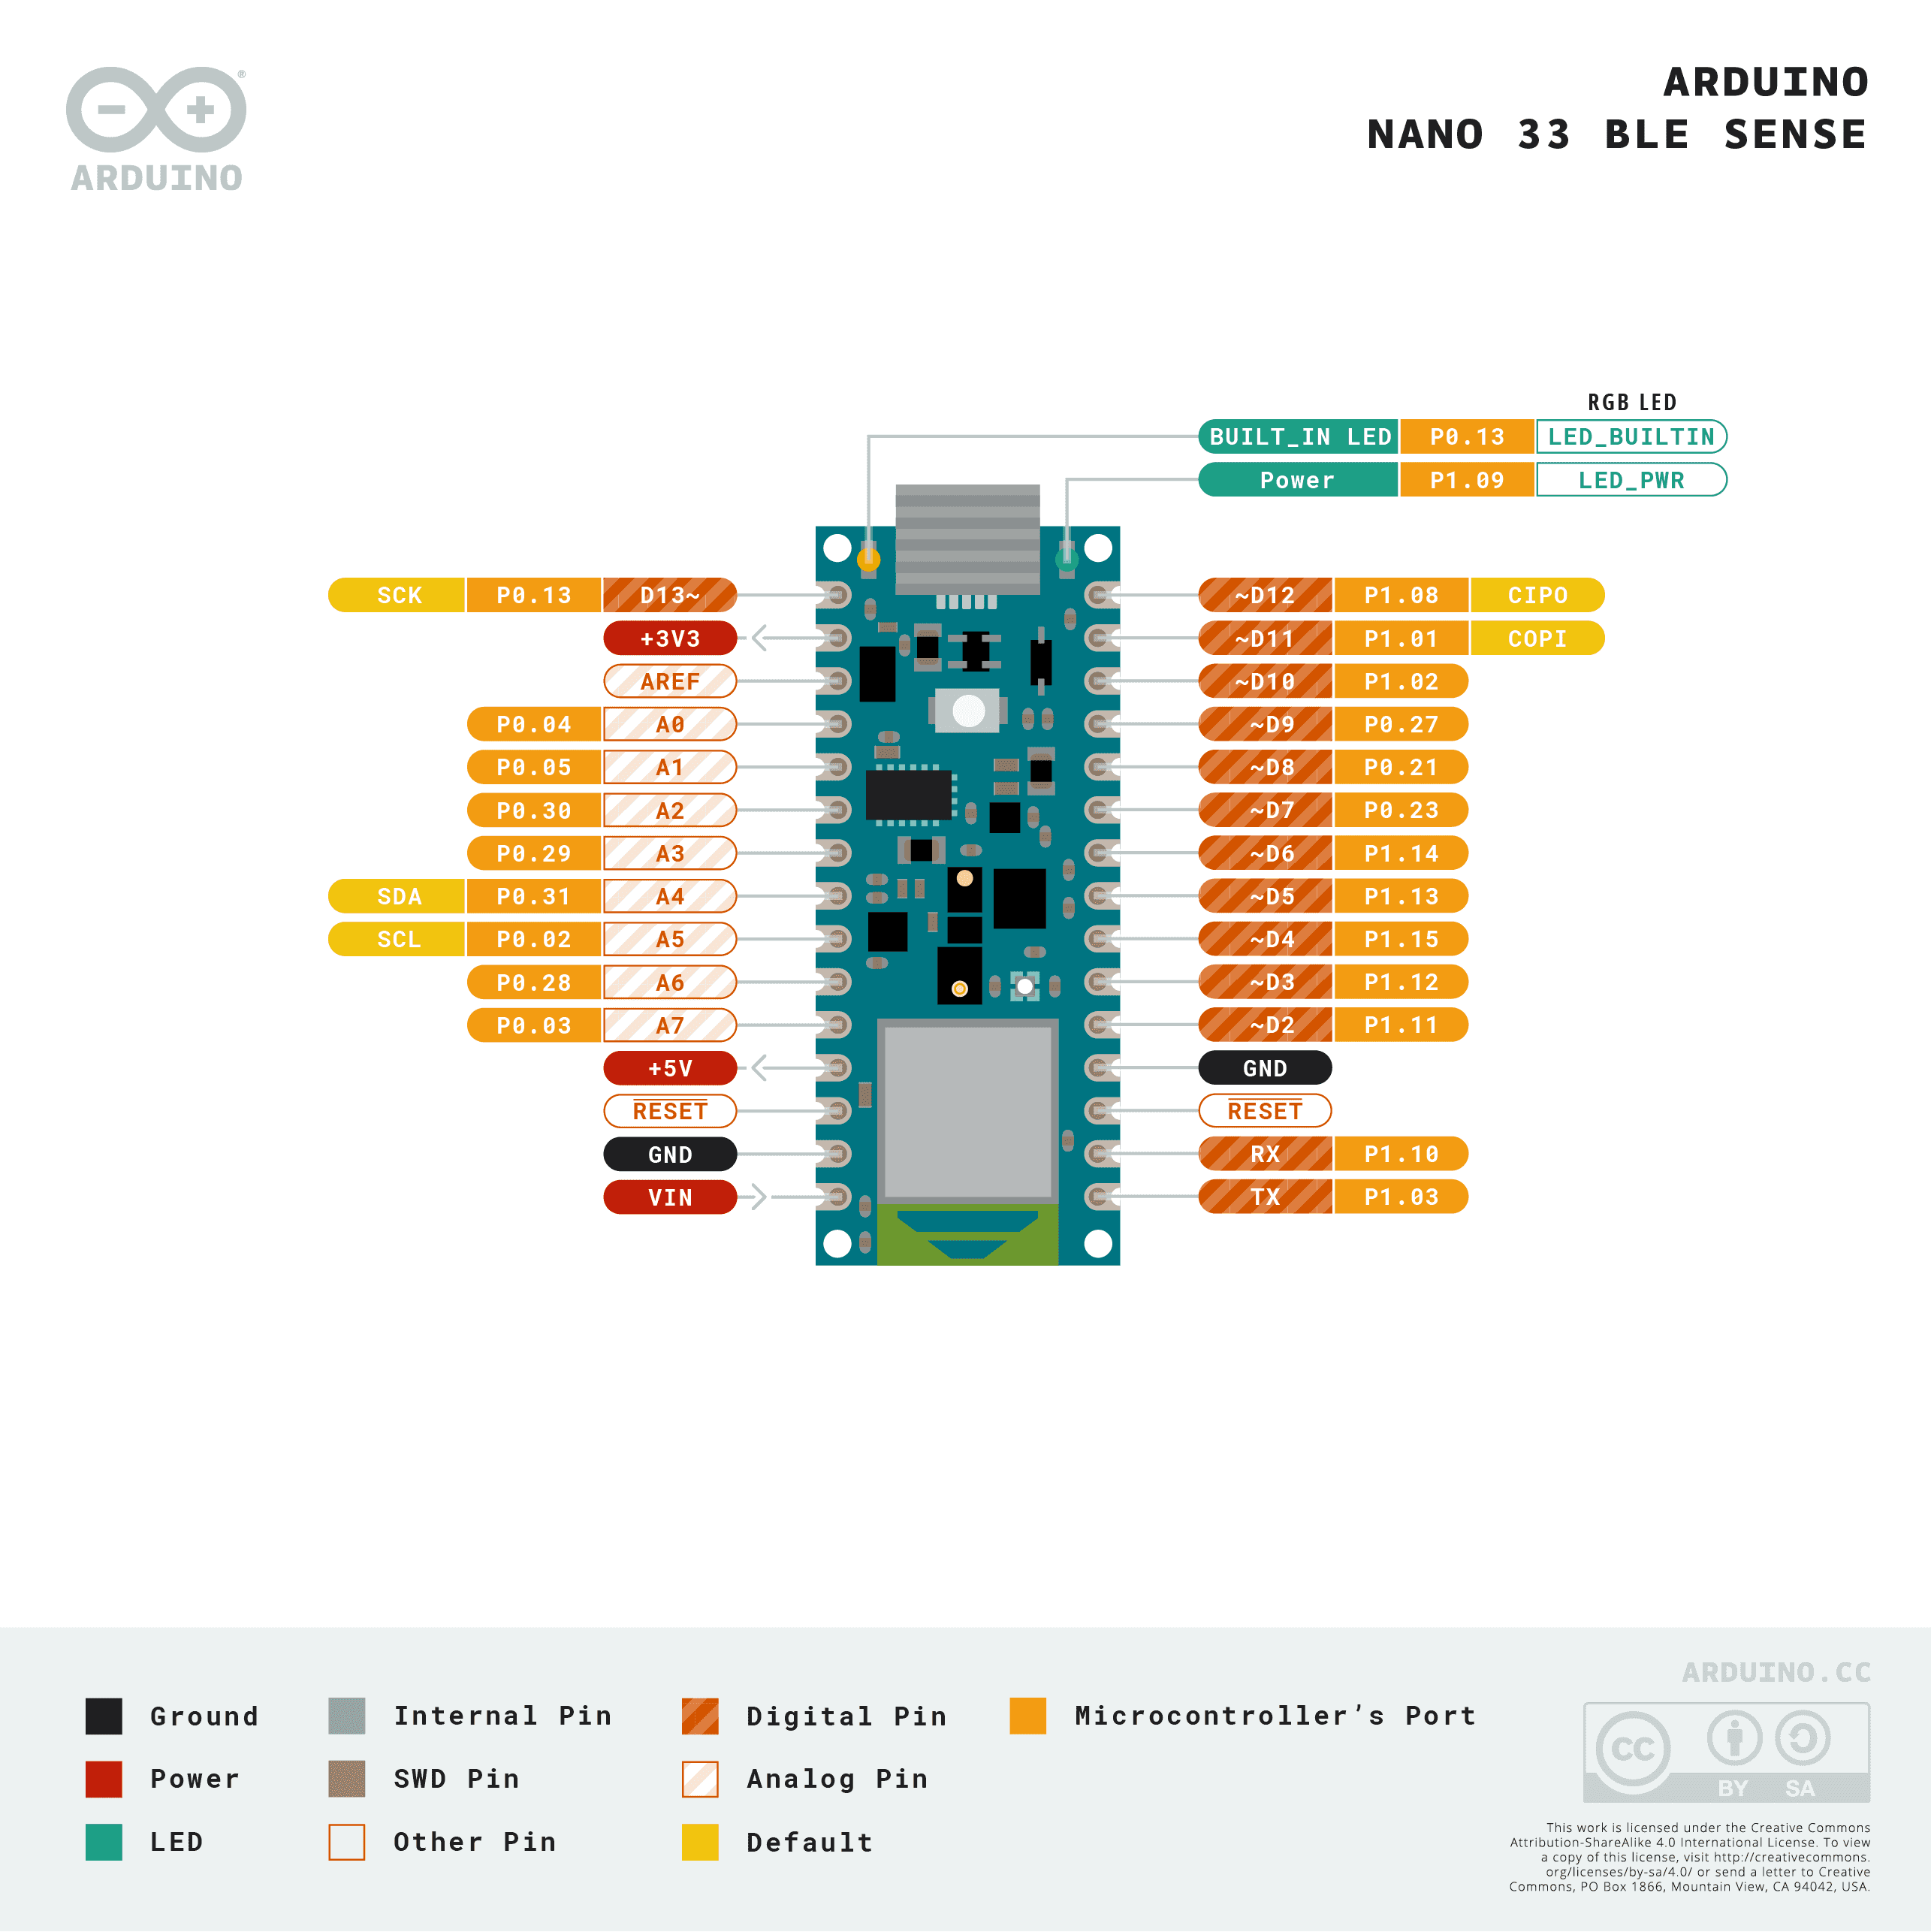 Arduino Nano 33 BLE Sense Pinout, Introducción y Especificaciones